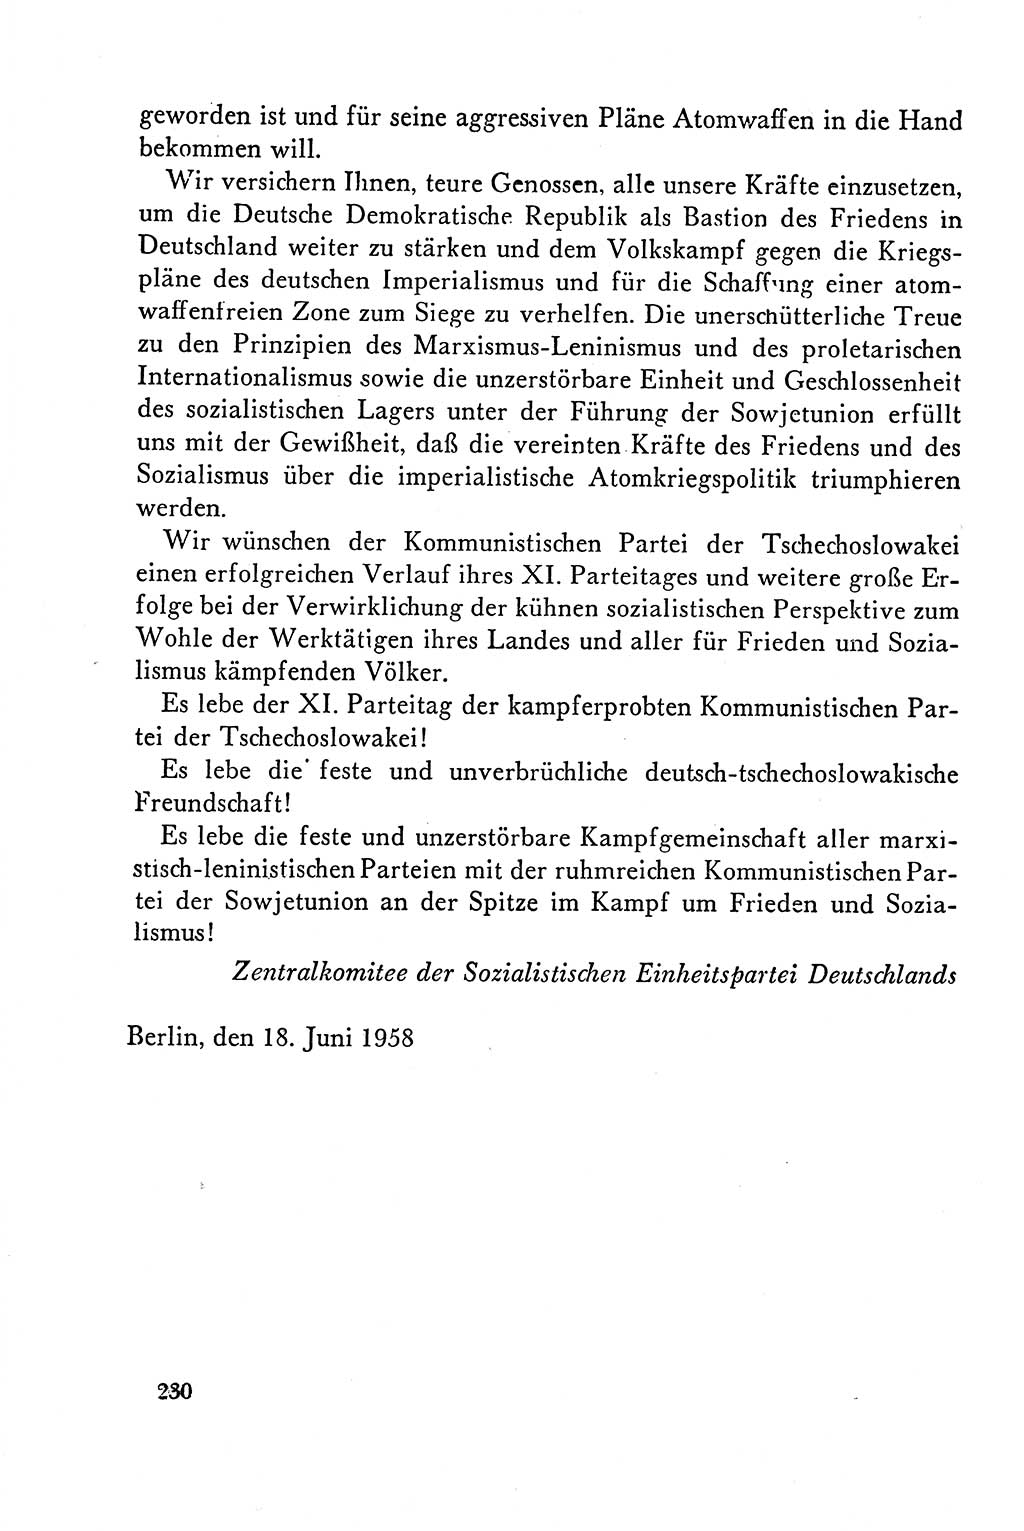 Dokumente der Sozialistischen Einheitspartei Deutschlands (SED) [Deutsche Demokratische Republik (DDR)] 1958-1959, Seite 230 (Dok. SED DDR 1958-1959, S. 230)